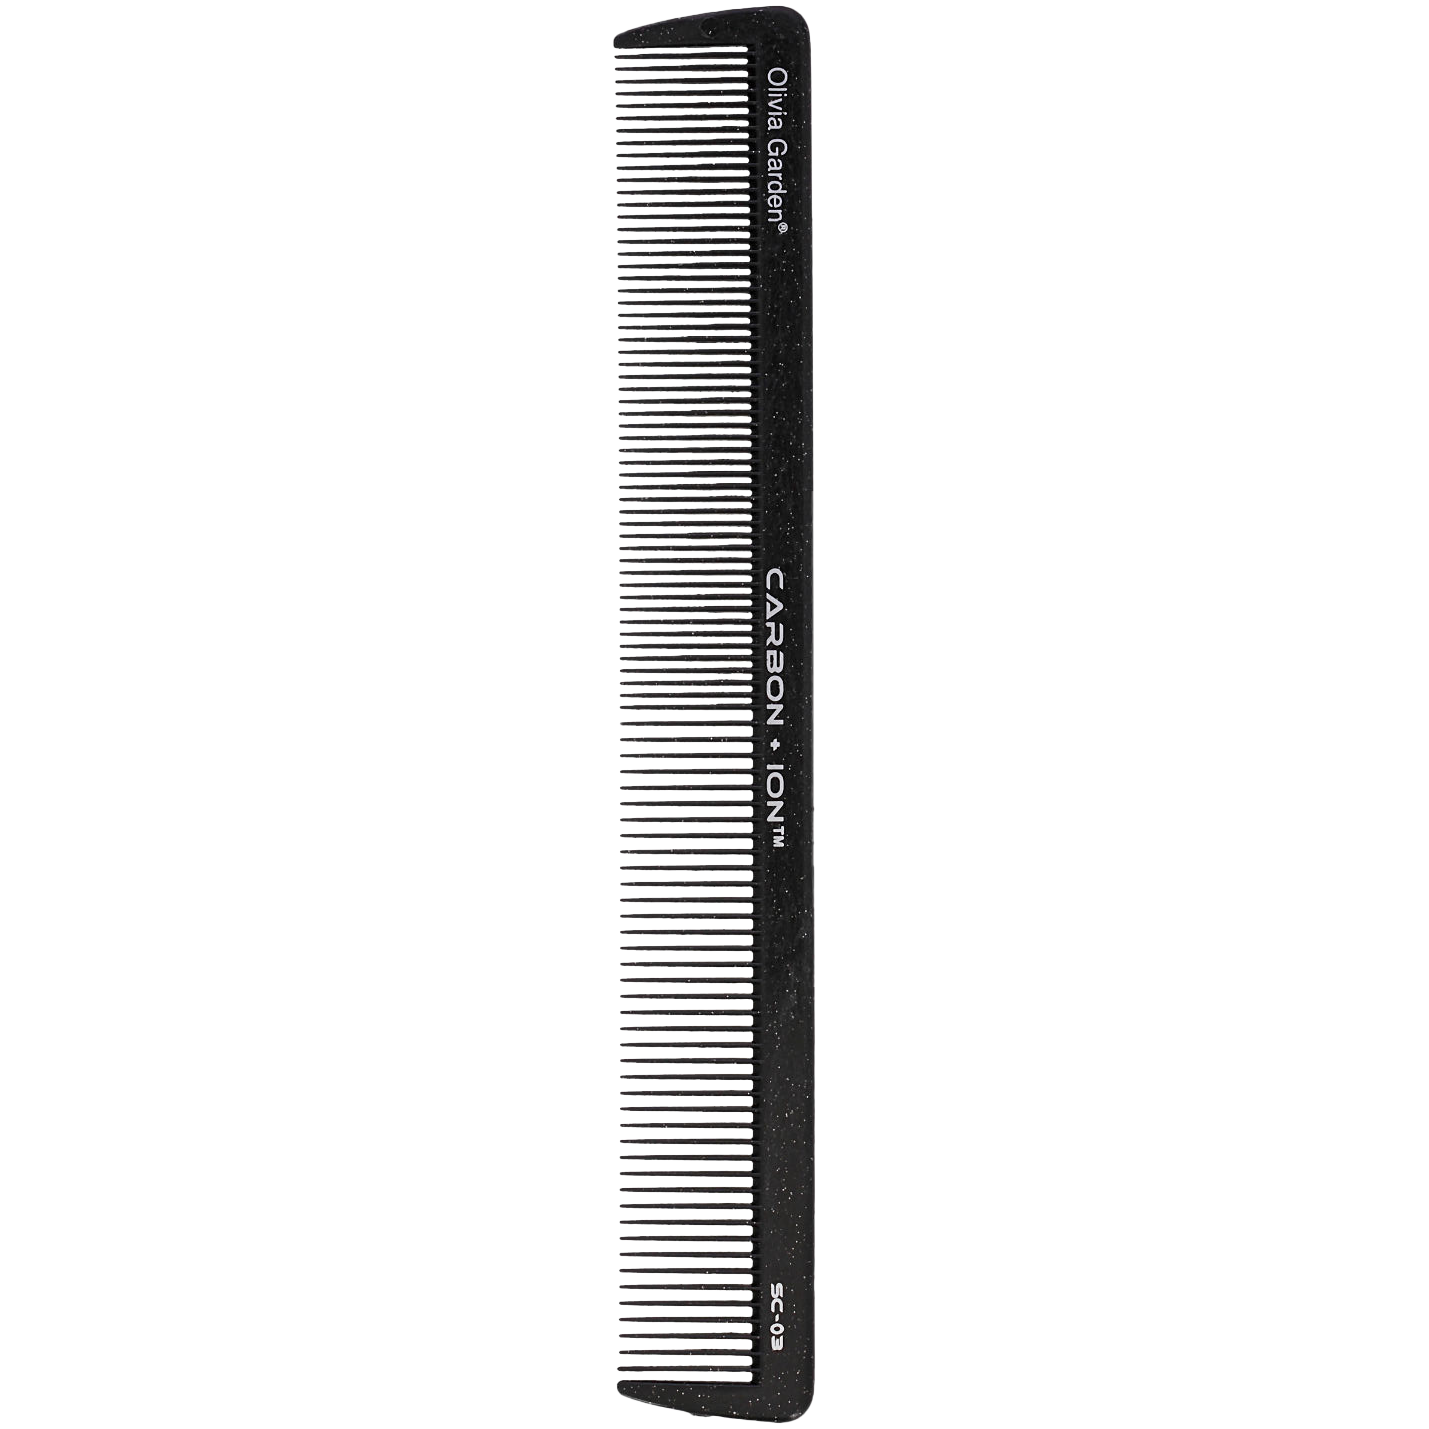 Olivia Garden Carbon Comb SC-3 расческа для волос SC-3, 1 шт. цена и фото